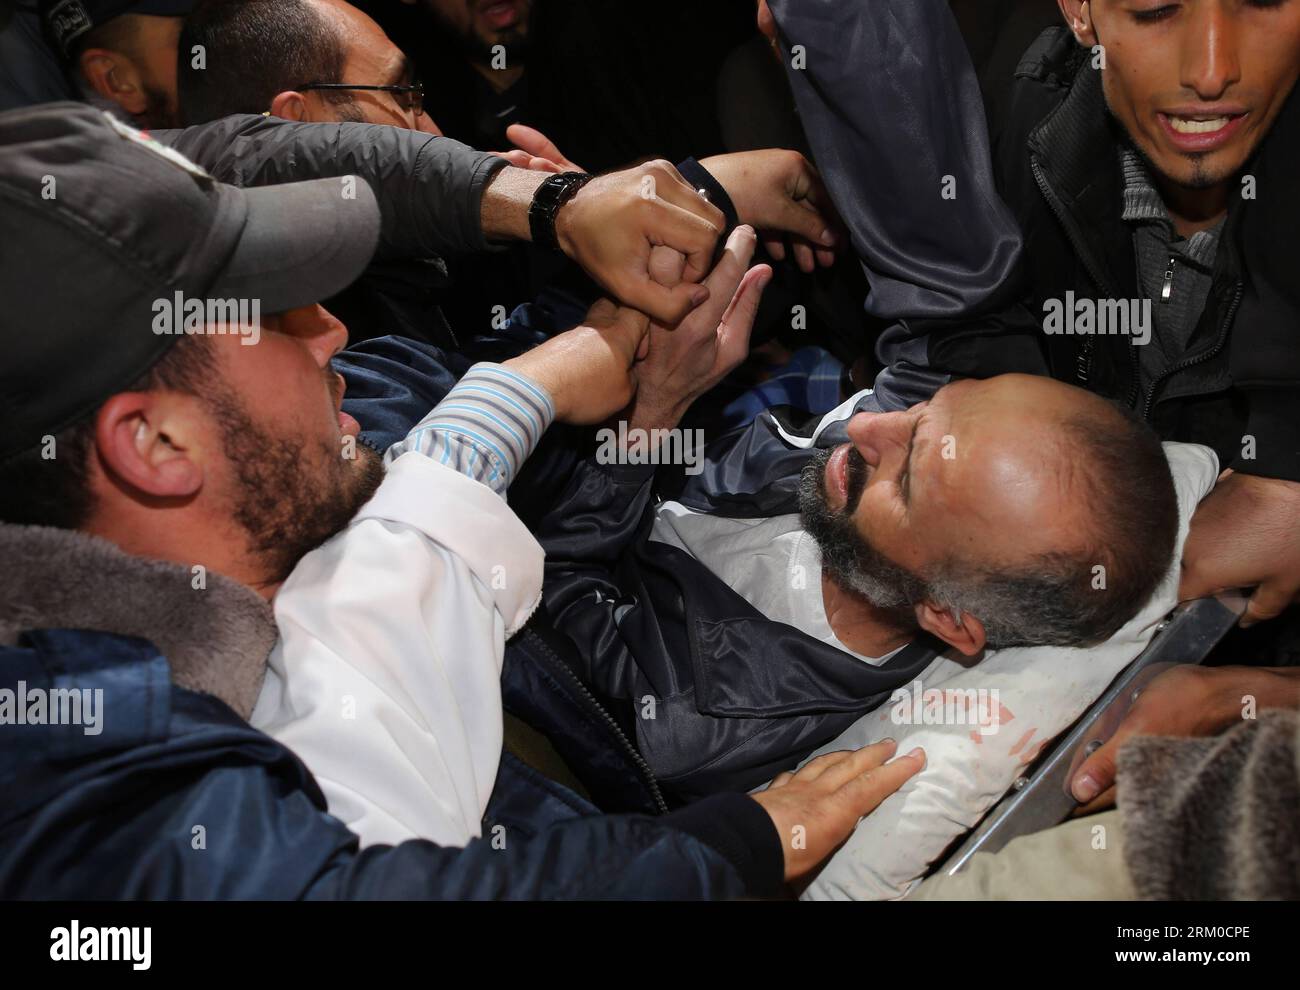 Bildnummer : 59366514 Datum : 17.03.2013 Copyright : imago/Xinhua (130317) -- GAZA, 17 mars 2013 (Xinhua) -- le prisonnier palestinien Ayman Sharawneh est transporté à son arrivée à l'hôpital al-Shifa dans la ville de Gaza, le 17 mars 2013. Sharawneh est arrivé dimanche dans la bande de Gaza pour son exil temporaire, mettant fin à ses 260 jours de grève de la faim pour protester contre sa détention. (Xinhua/Wissam Nassar) MIDEAST-GAZA-PRISONNIERS-GRÈVE DE LA FAIM PUBLICATIONxNOTxINxCHN Gesellschaft Politik Ankunft politischer Gefangener Freilassung Hungerstreik premiumd x0x xac 2013 quer 59366514 Date 17 03 2013 Copyright Imago XINHU Banque D'Images